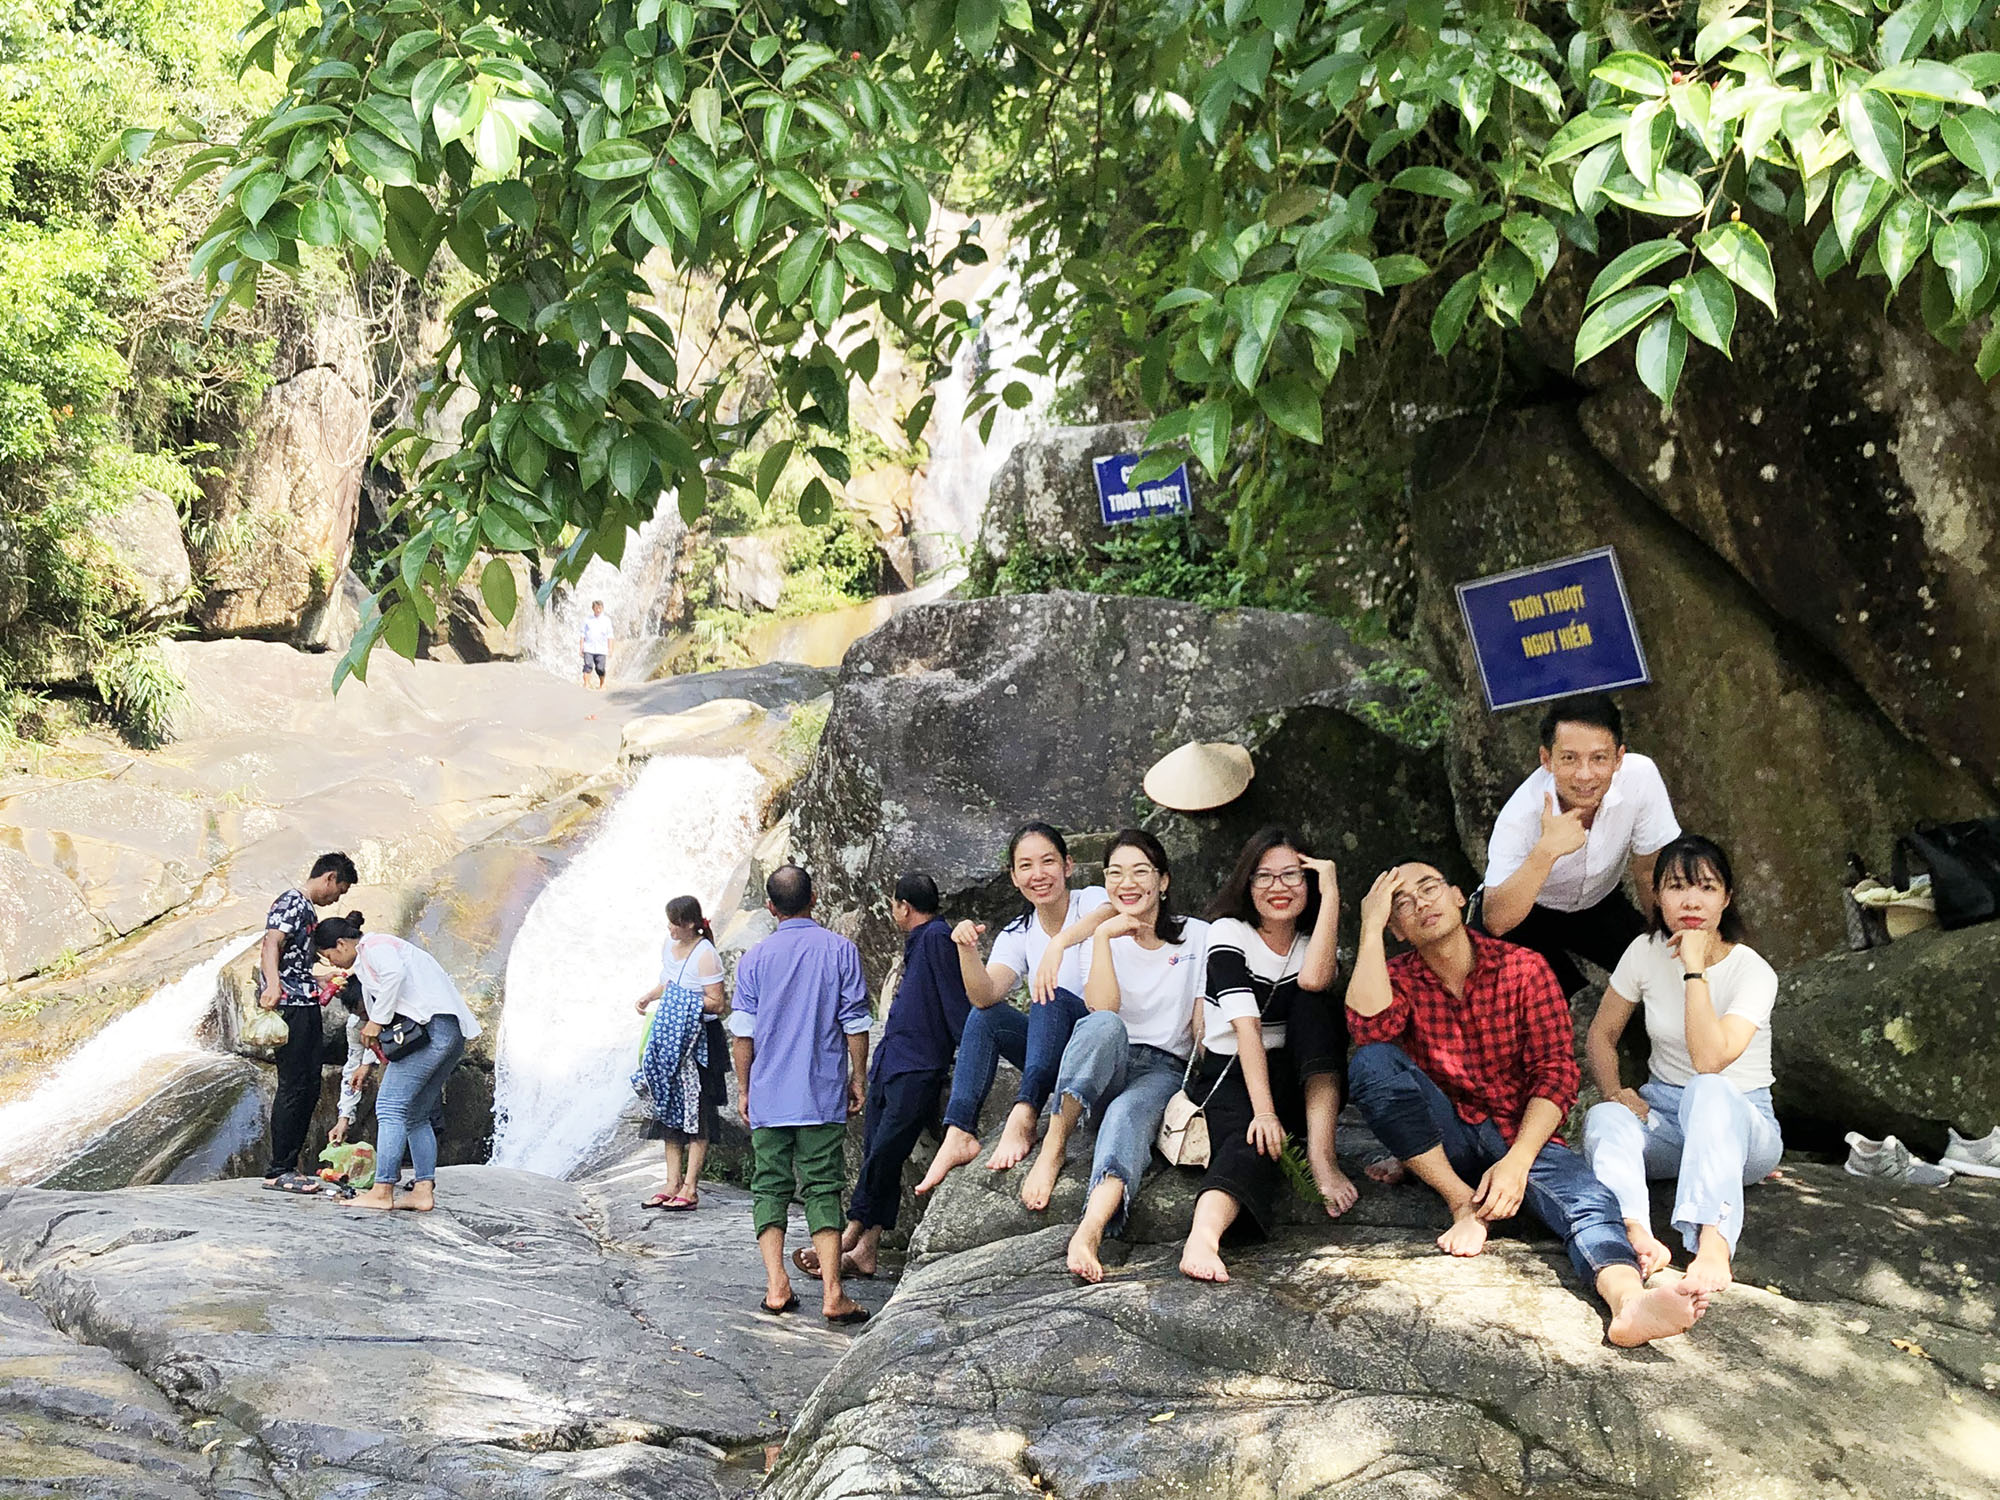 Du khách tới vui chơi tại thác Khe Vằn, xã Húc Động (Bình Liêu), tháng 9/2020.